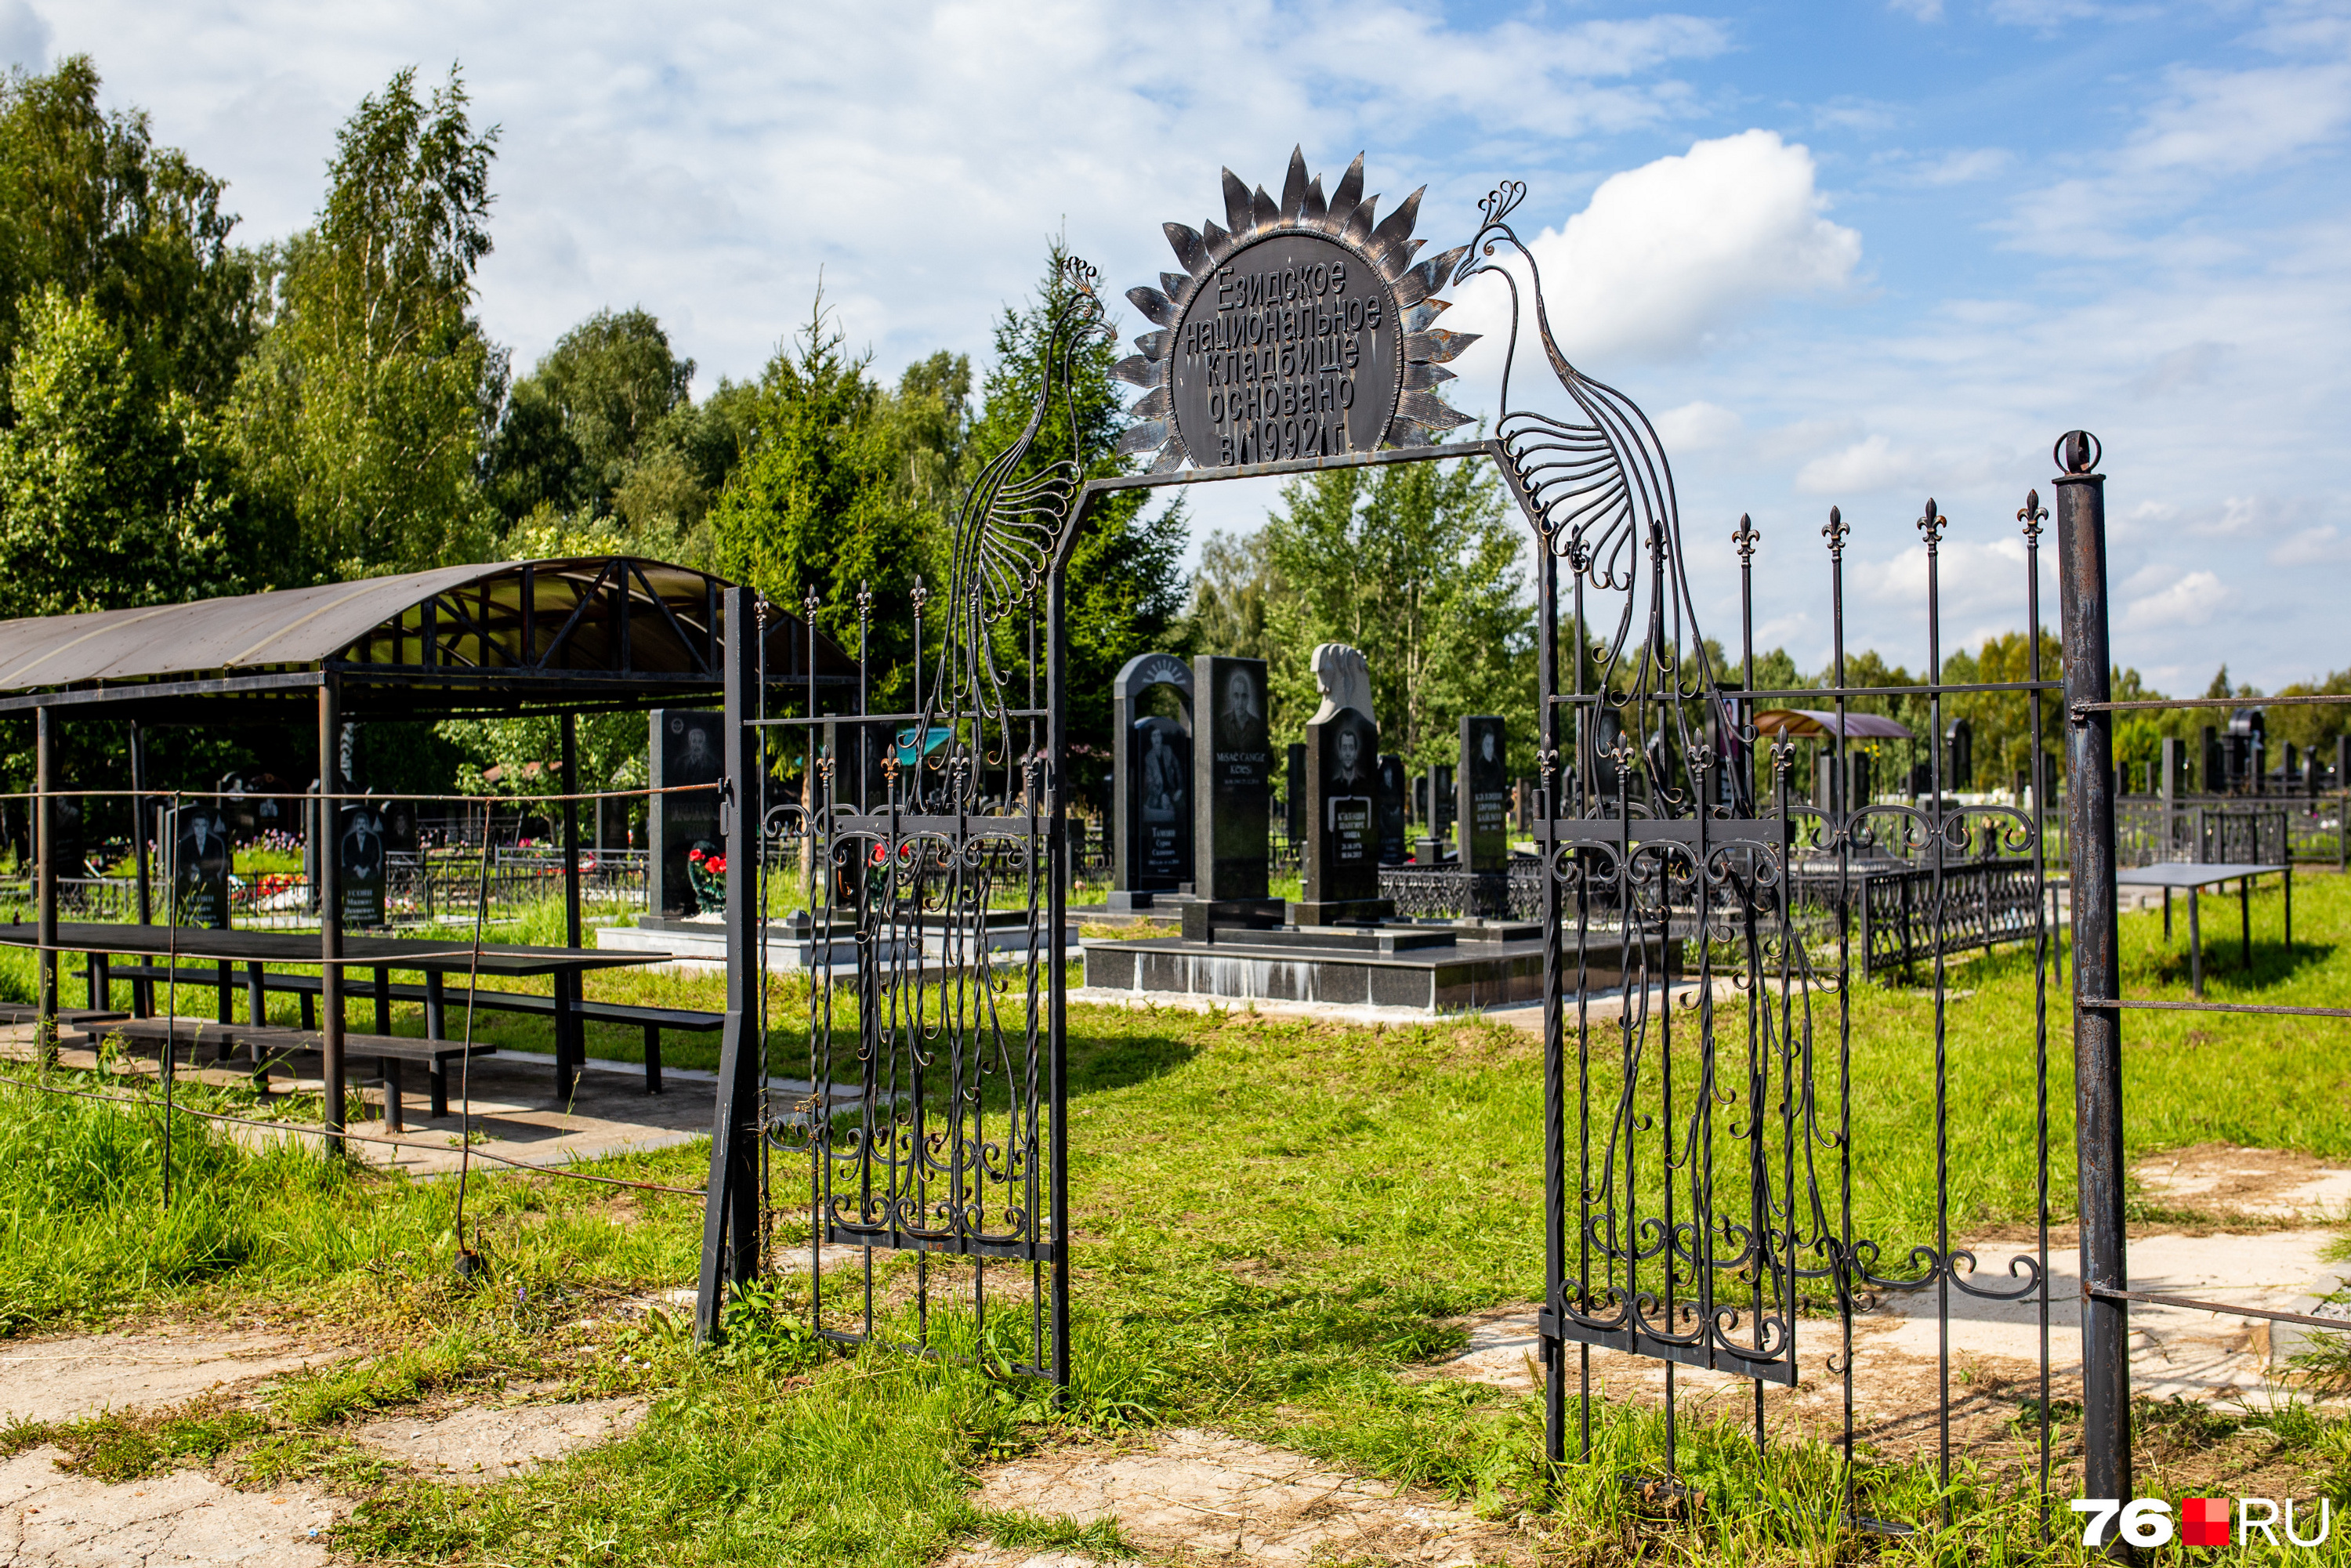 Езидское кладбище находится на территории нового в 10 километрах от центра Тутаева. Оно основано в 1992 году